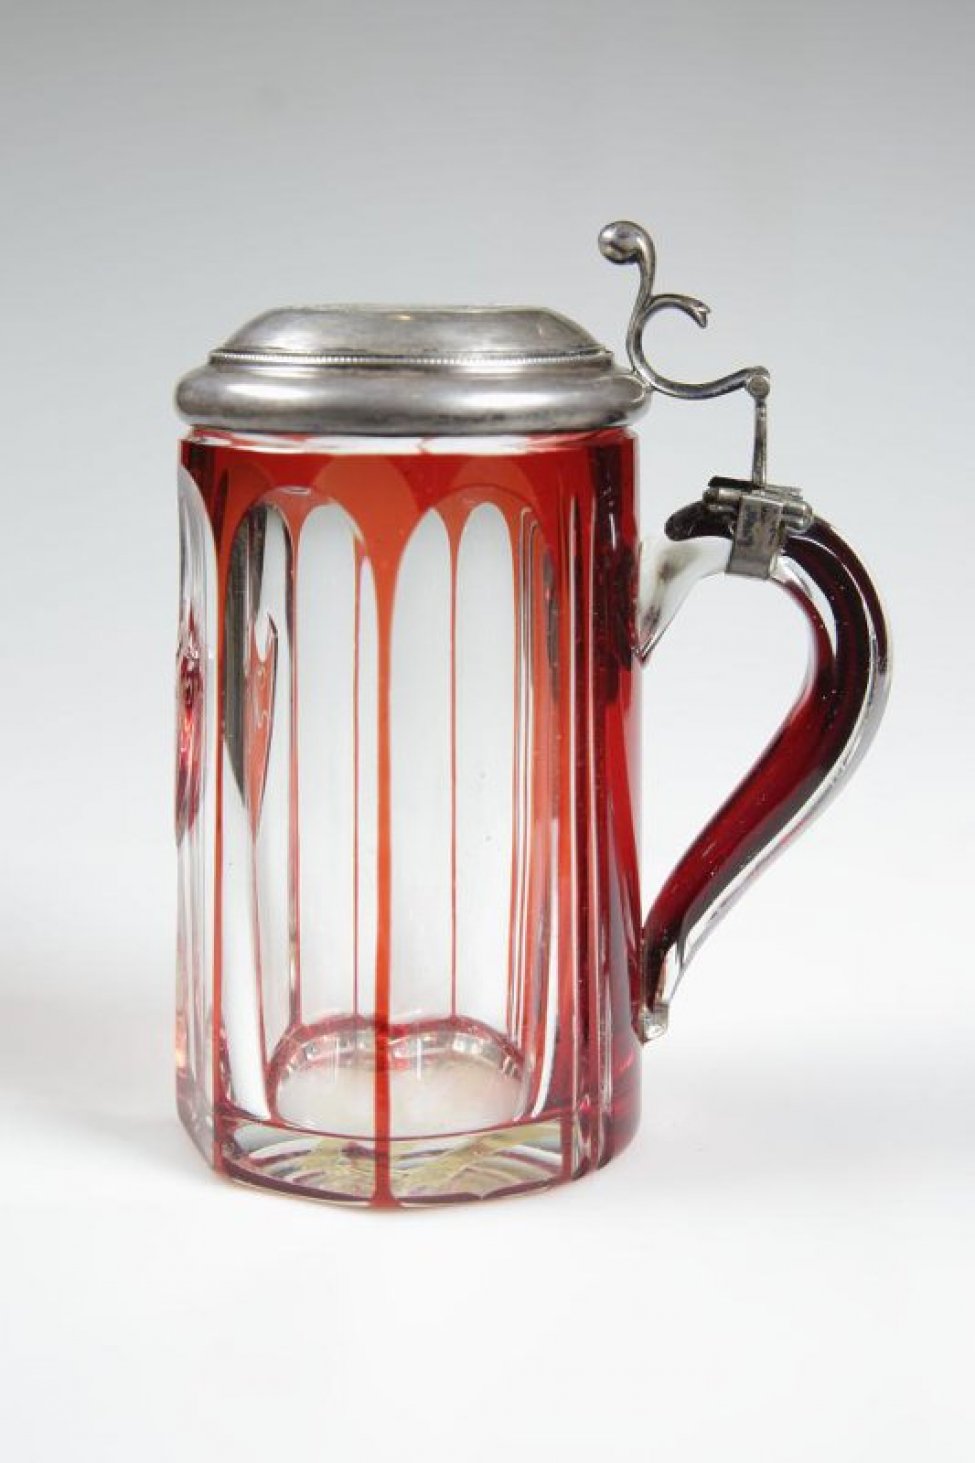 Кружка из двухслойного стекла (белое с красным), шестигранная, со щитком красного цвета. На стеклянной ручке укреплена серебряная крышка, в которую вмонтирован рубль 1724 г. с изображением Петра I.